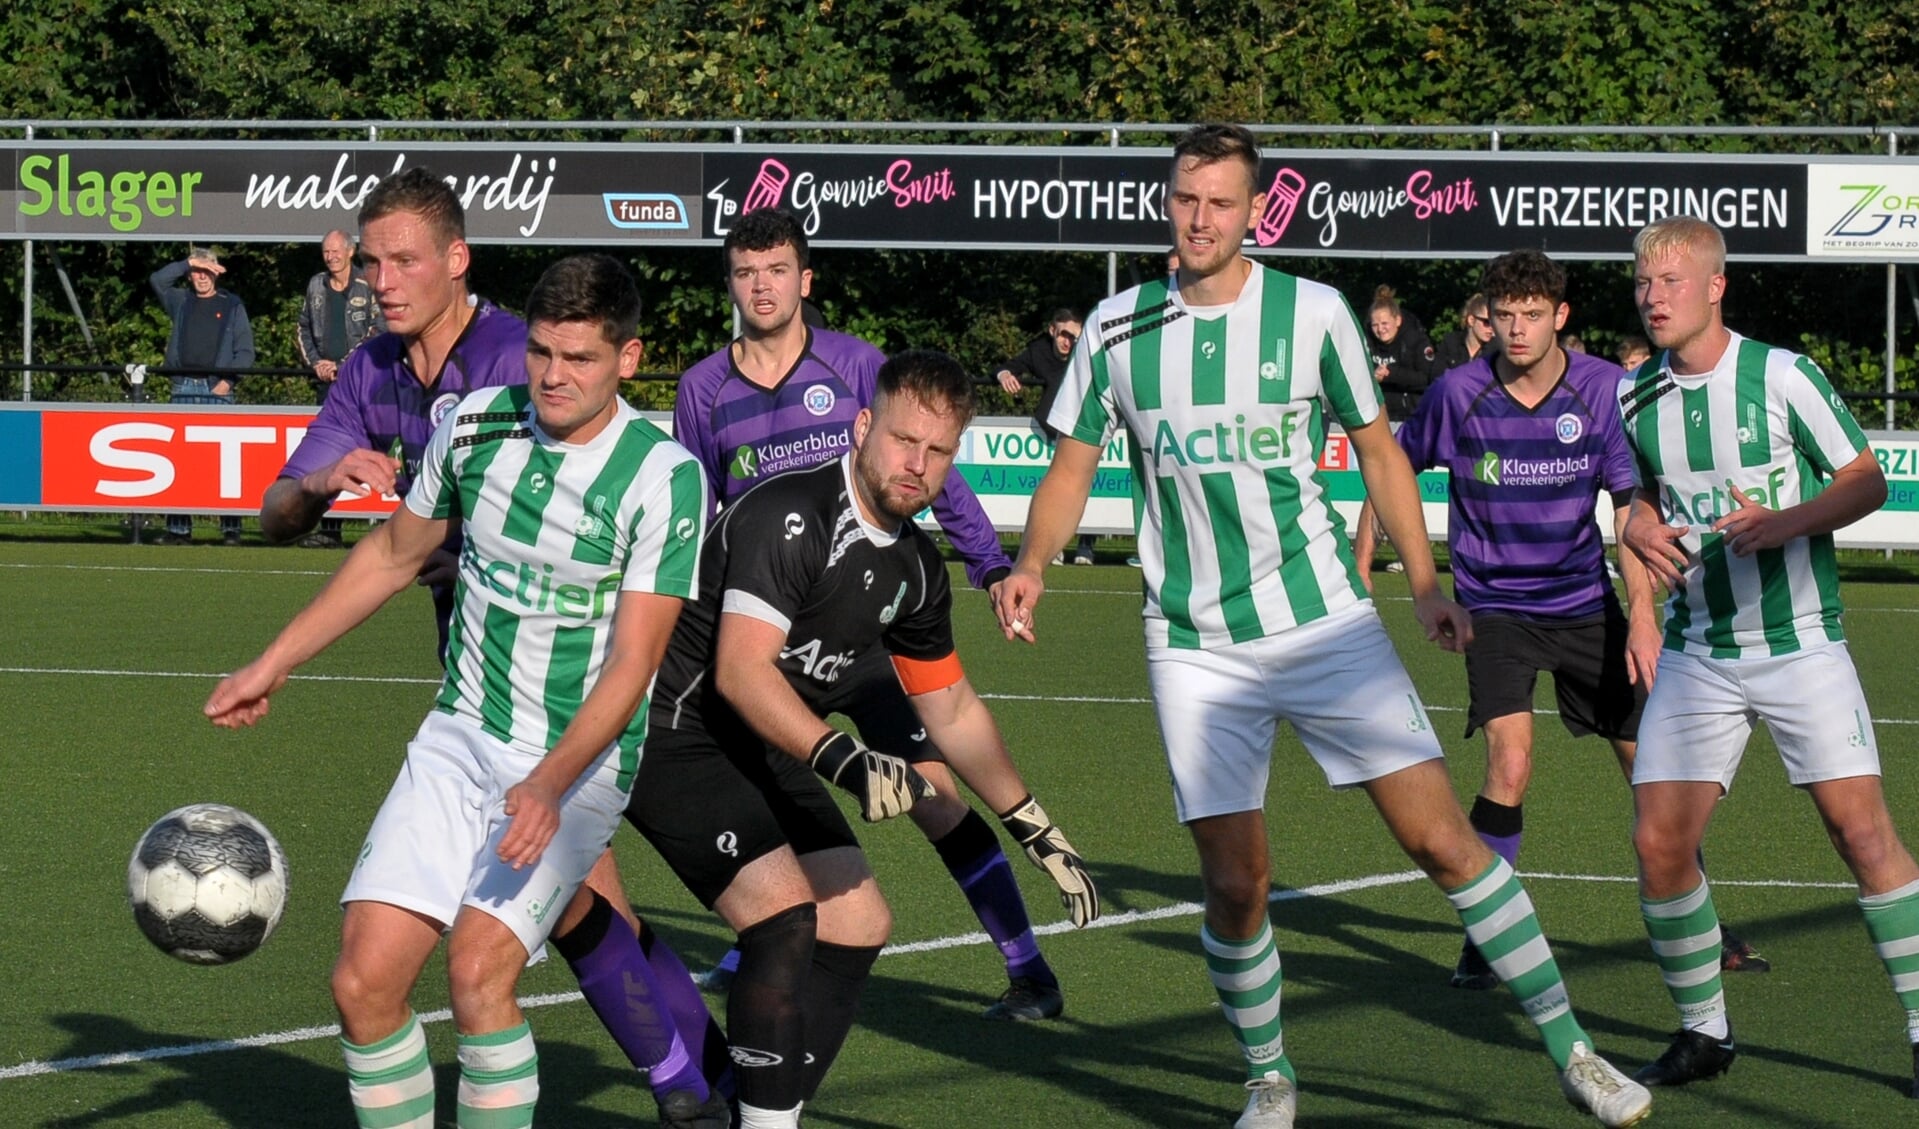 Luc Kuiper, Stef Klugkist en Mark Kruizenga worden vakkundig van de bal gehouden door de verdediging van Drenthina.